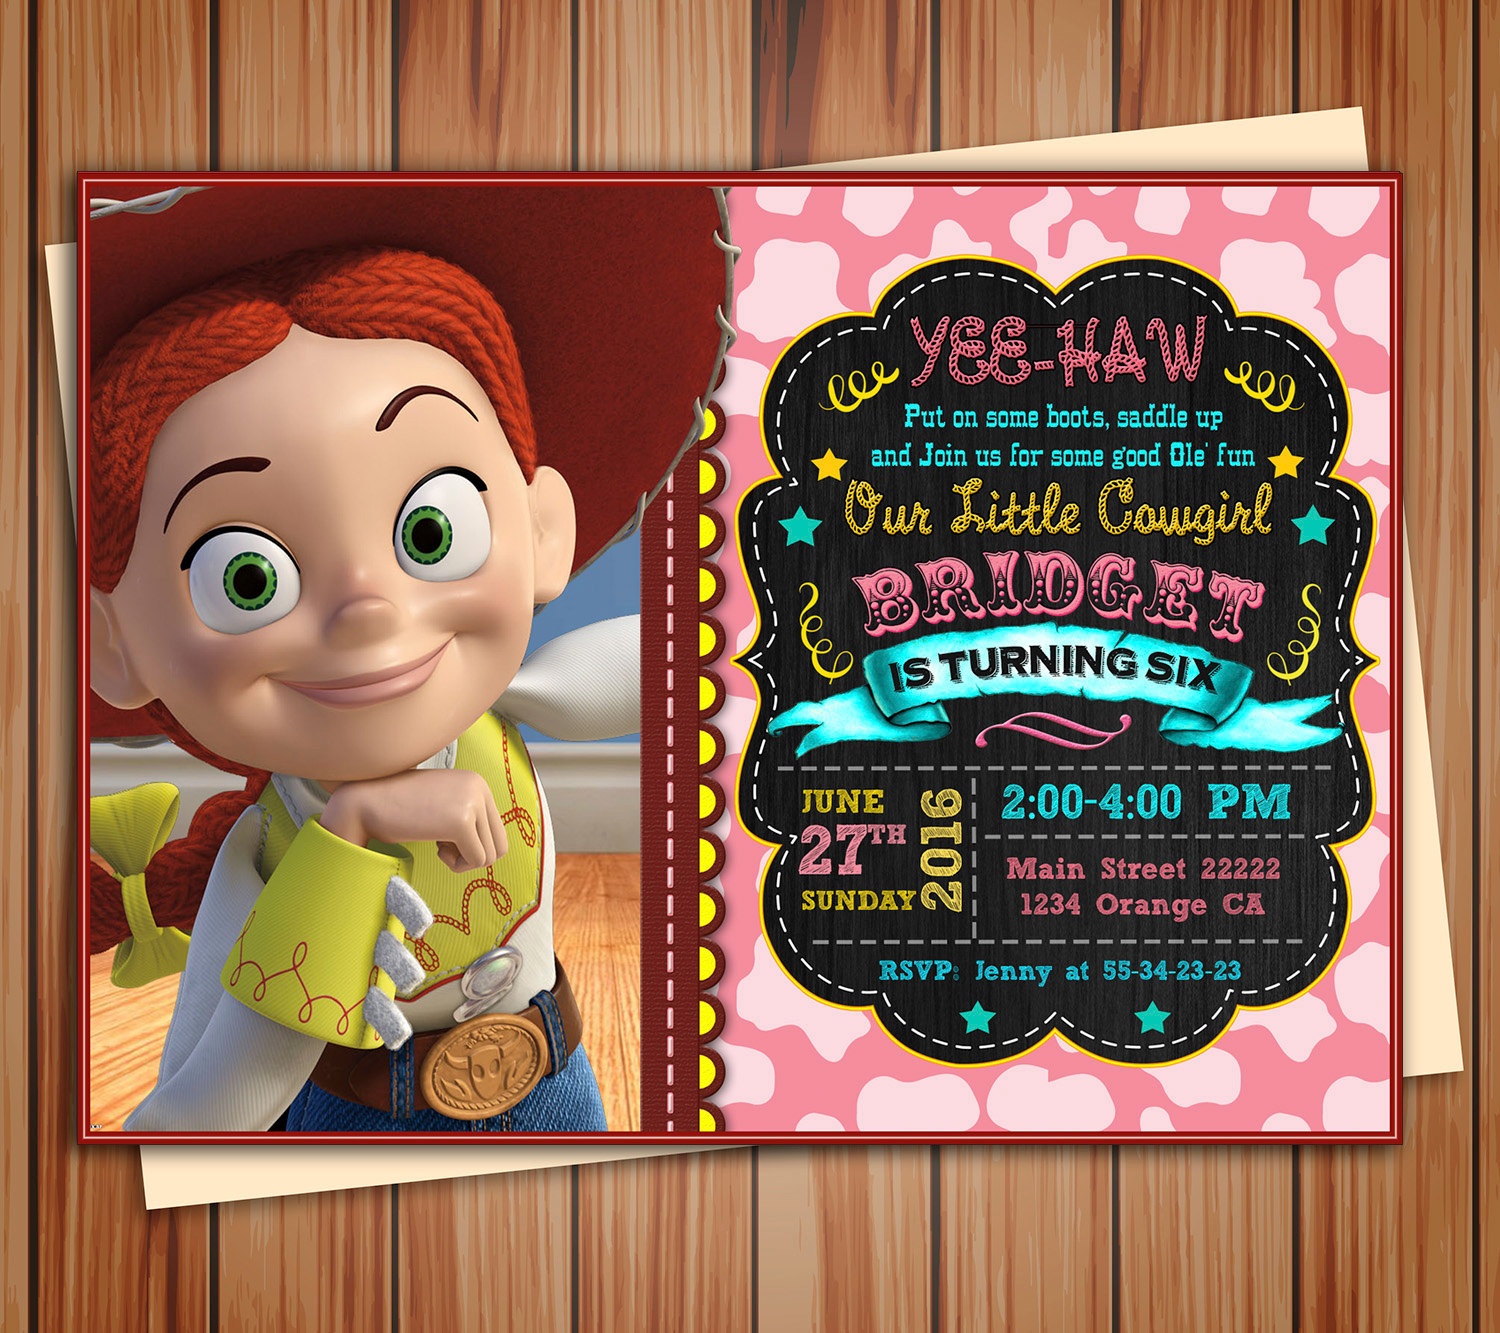 Jessie Cowgirl Toy Story Birthday Photo Invitation Chalkboard | Etsy - Toy Story Birthday Card Printable Free